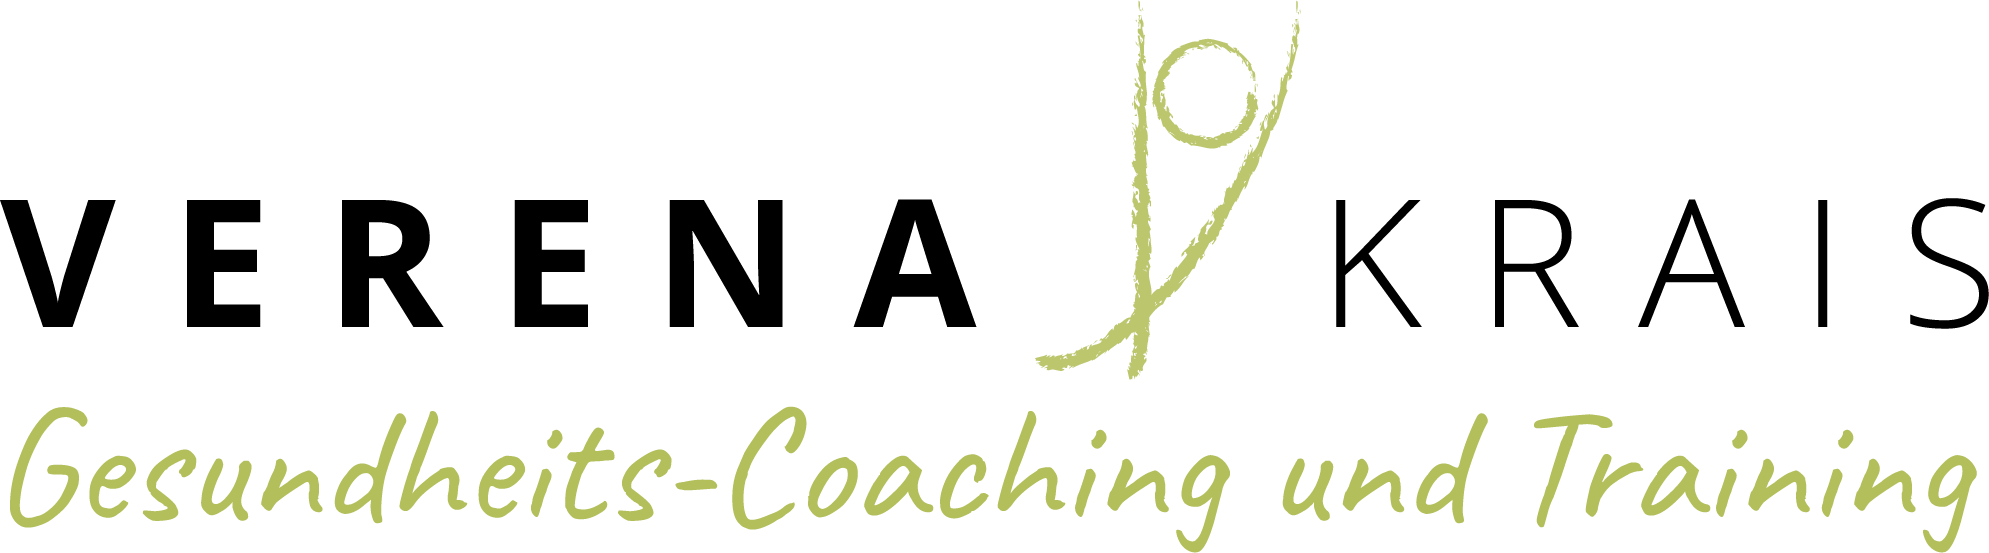 Verena Krais - Gesundheits-Coaching und Training